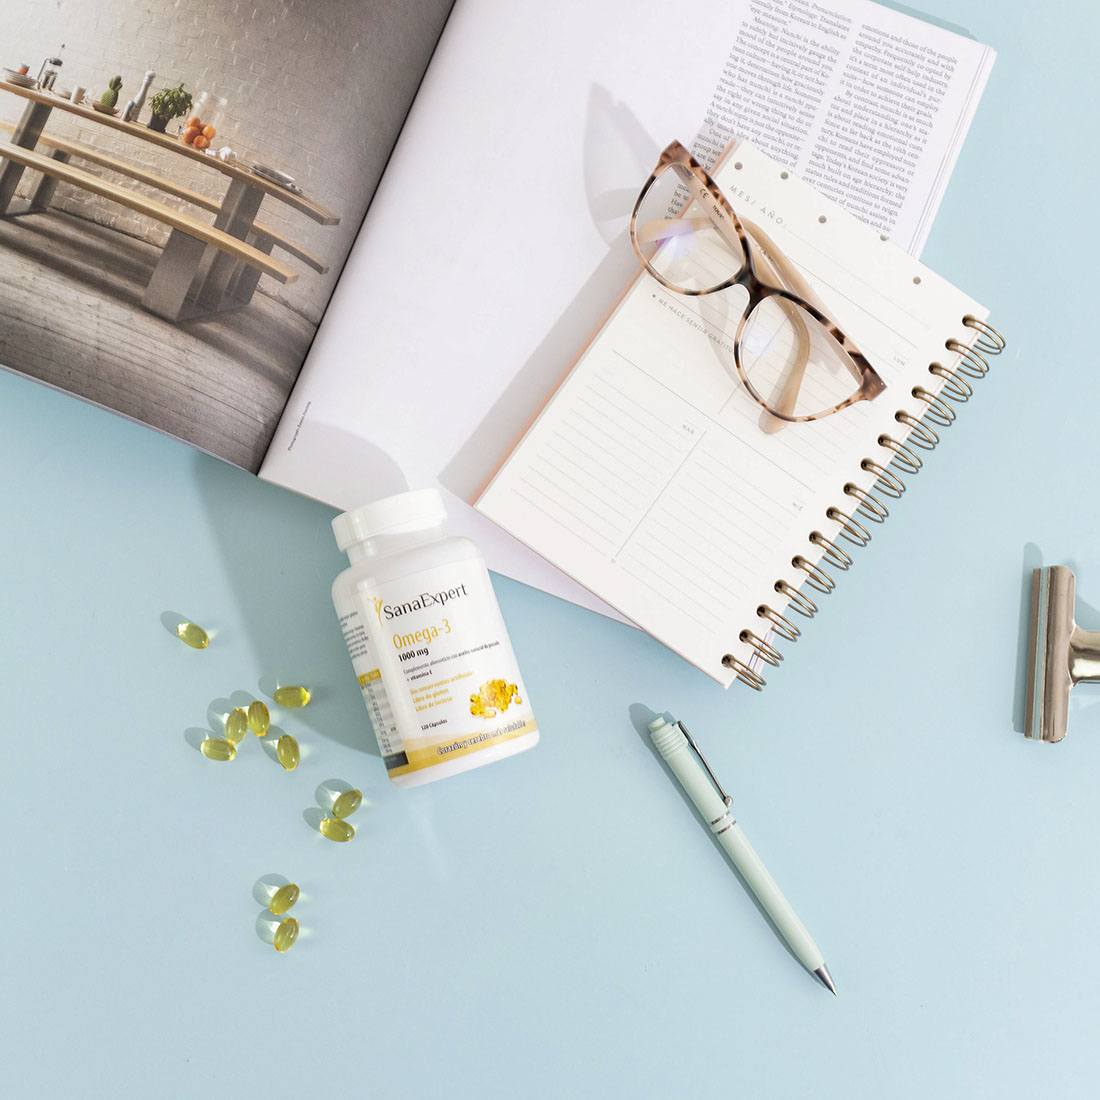 SanaExpert Omega-3 Kapseln verstreut neben einem offenen Notizbuch und einer Brille auf einem Schreibtisch, symbolisiert die Verbindung zwischen Gesundheit und produktiver Arbeit.